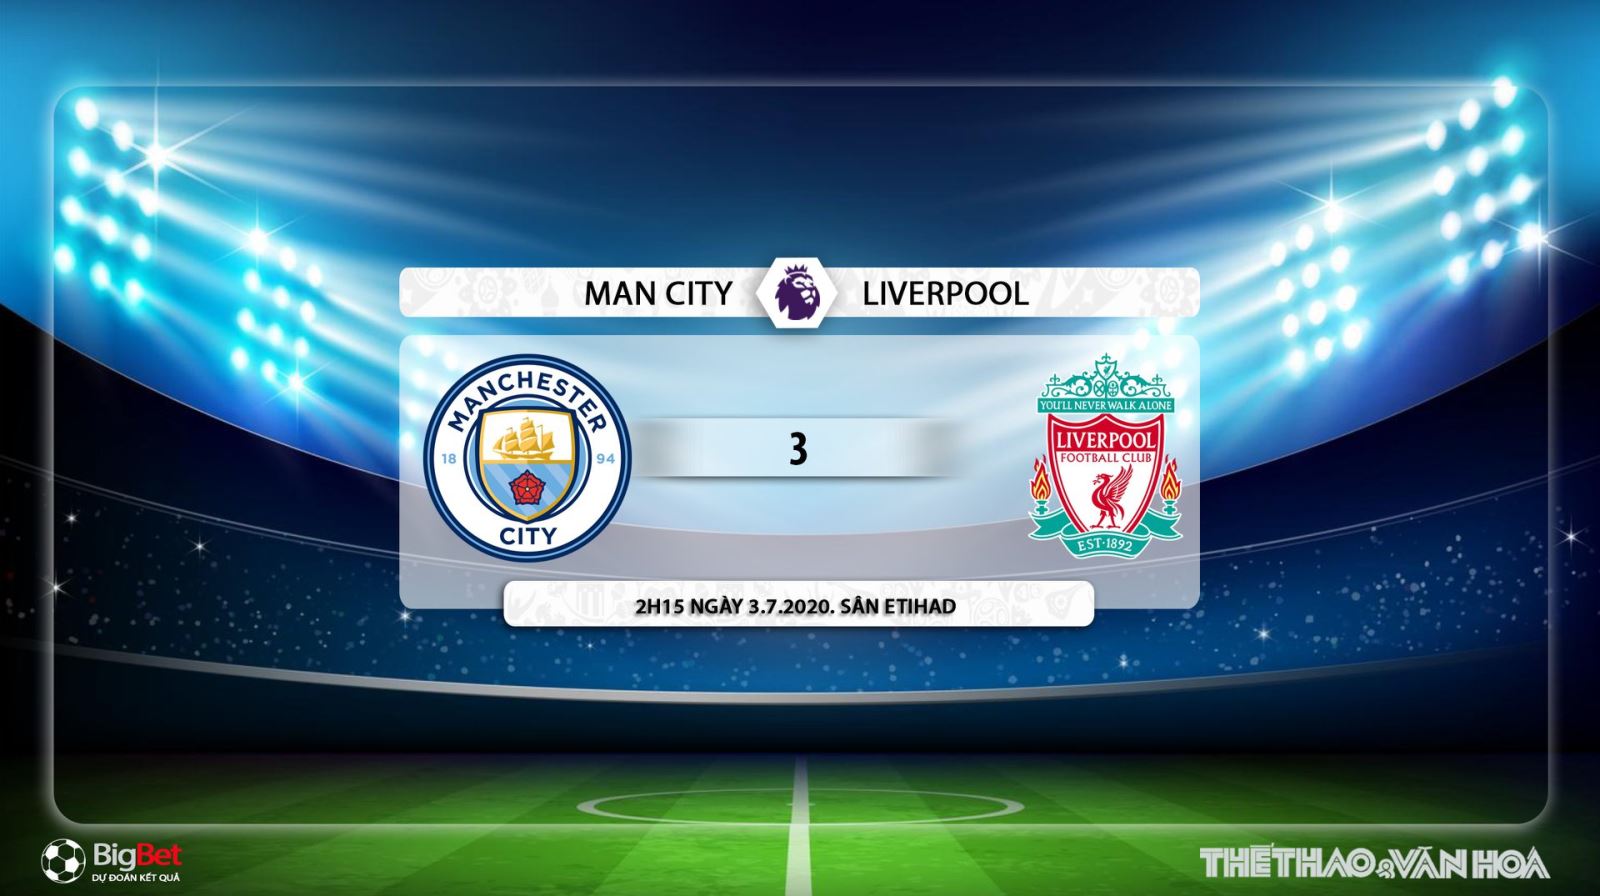 Man City vs Liverpool, nhận định bóng đá Man City vs Liverpool, nhận định Man City vs Liverpool, trực tiếp Man City vs Liverpool, Man City, Liverpool, nhận định bóng đá, kèo bóng đá